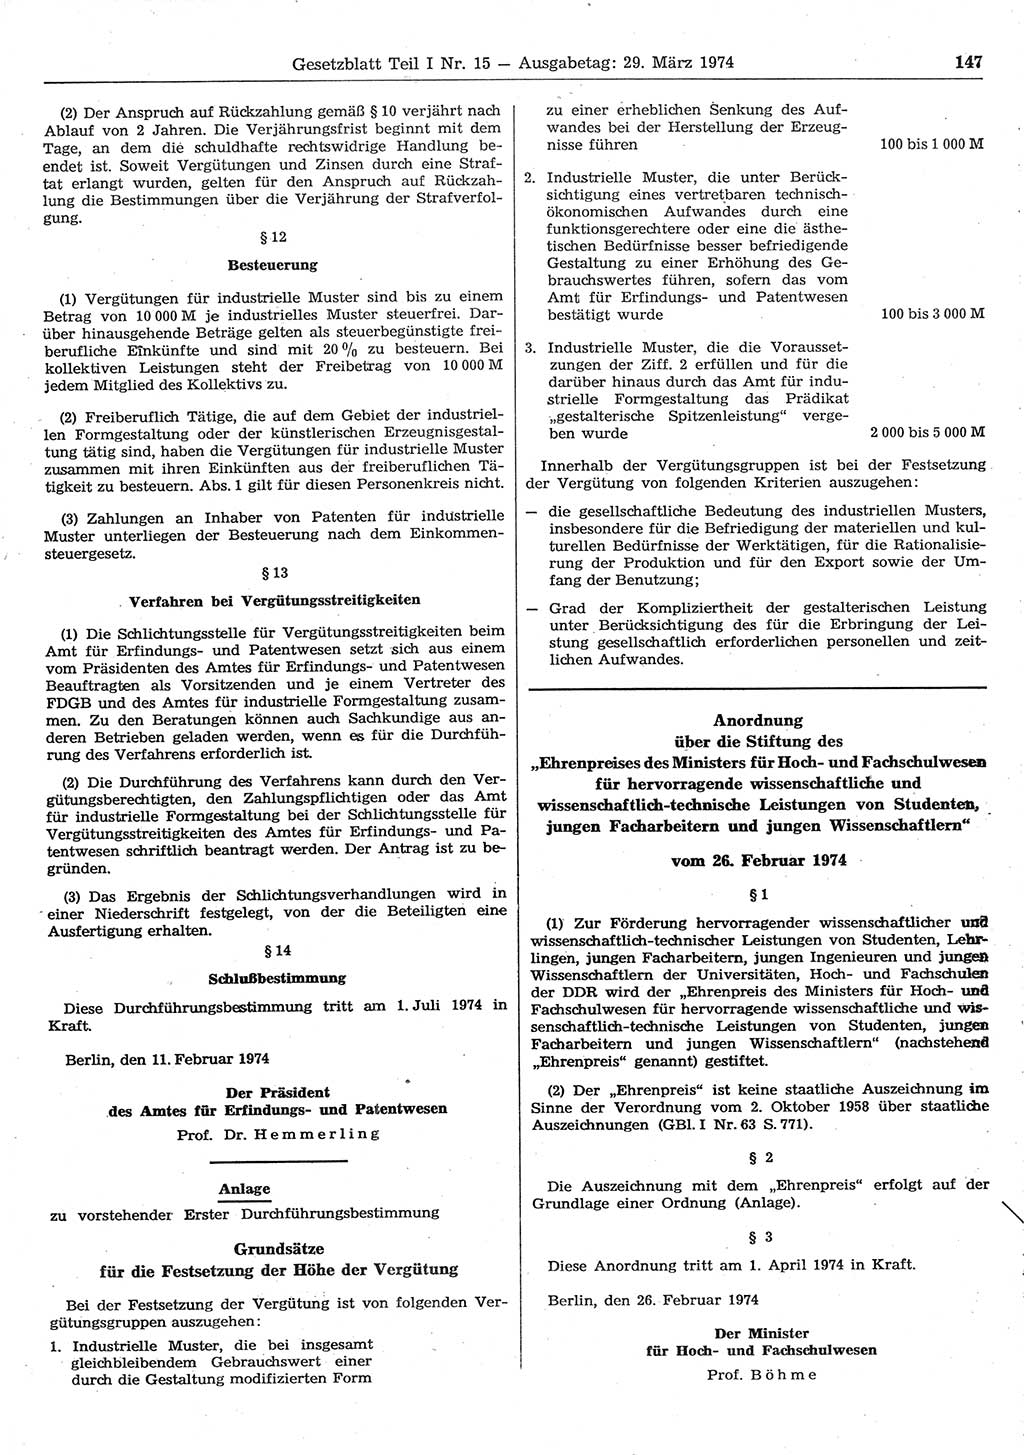 Gesetzblatt (GBl.) der Deutschen Demokratischen Republik (DDR) Teil Ⅰ 1974, Seite 147 (GBl. DDR Ⅰ 1974, S. 147)